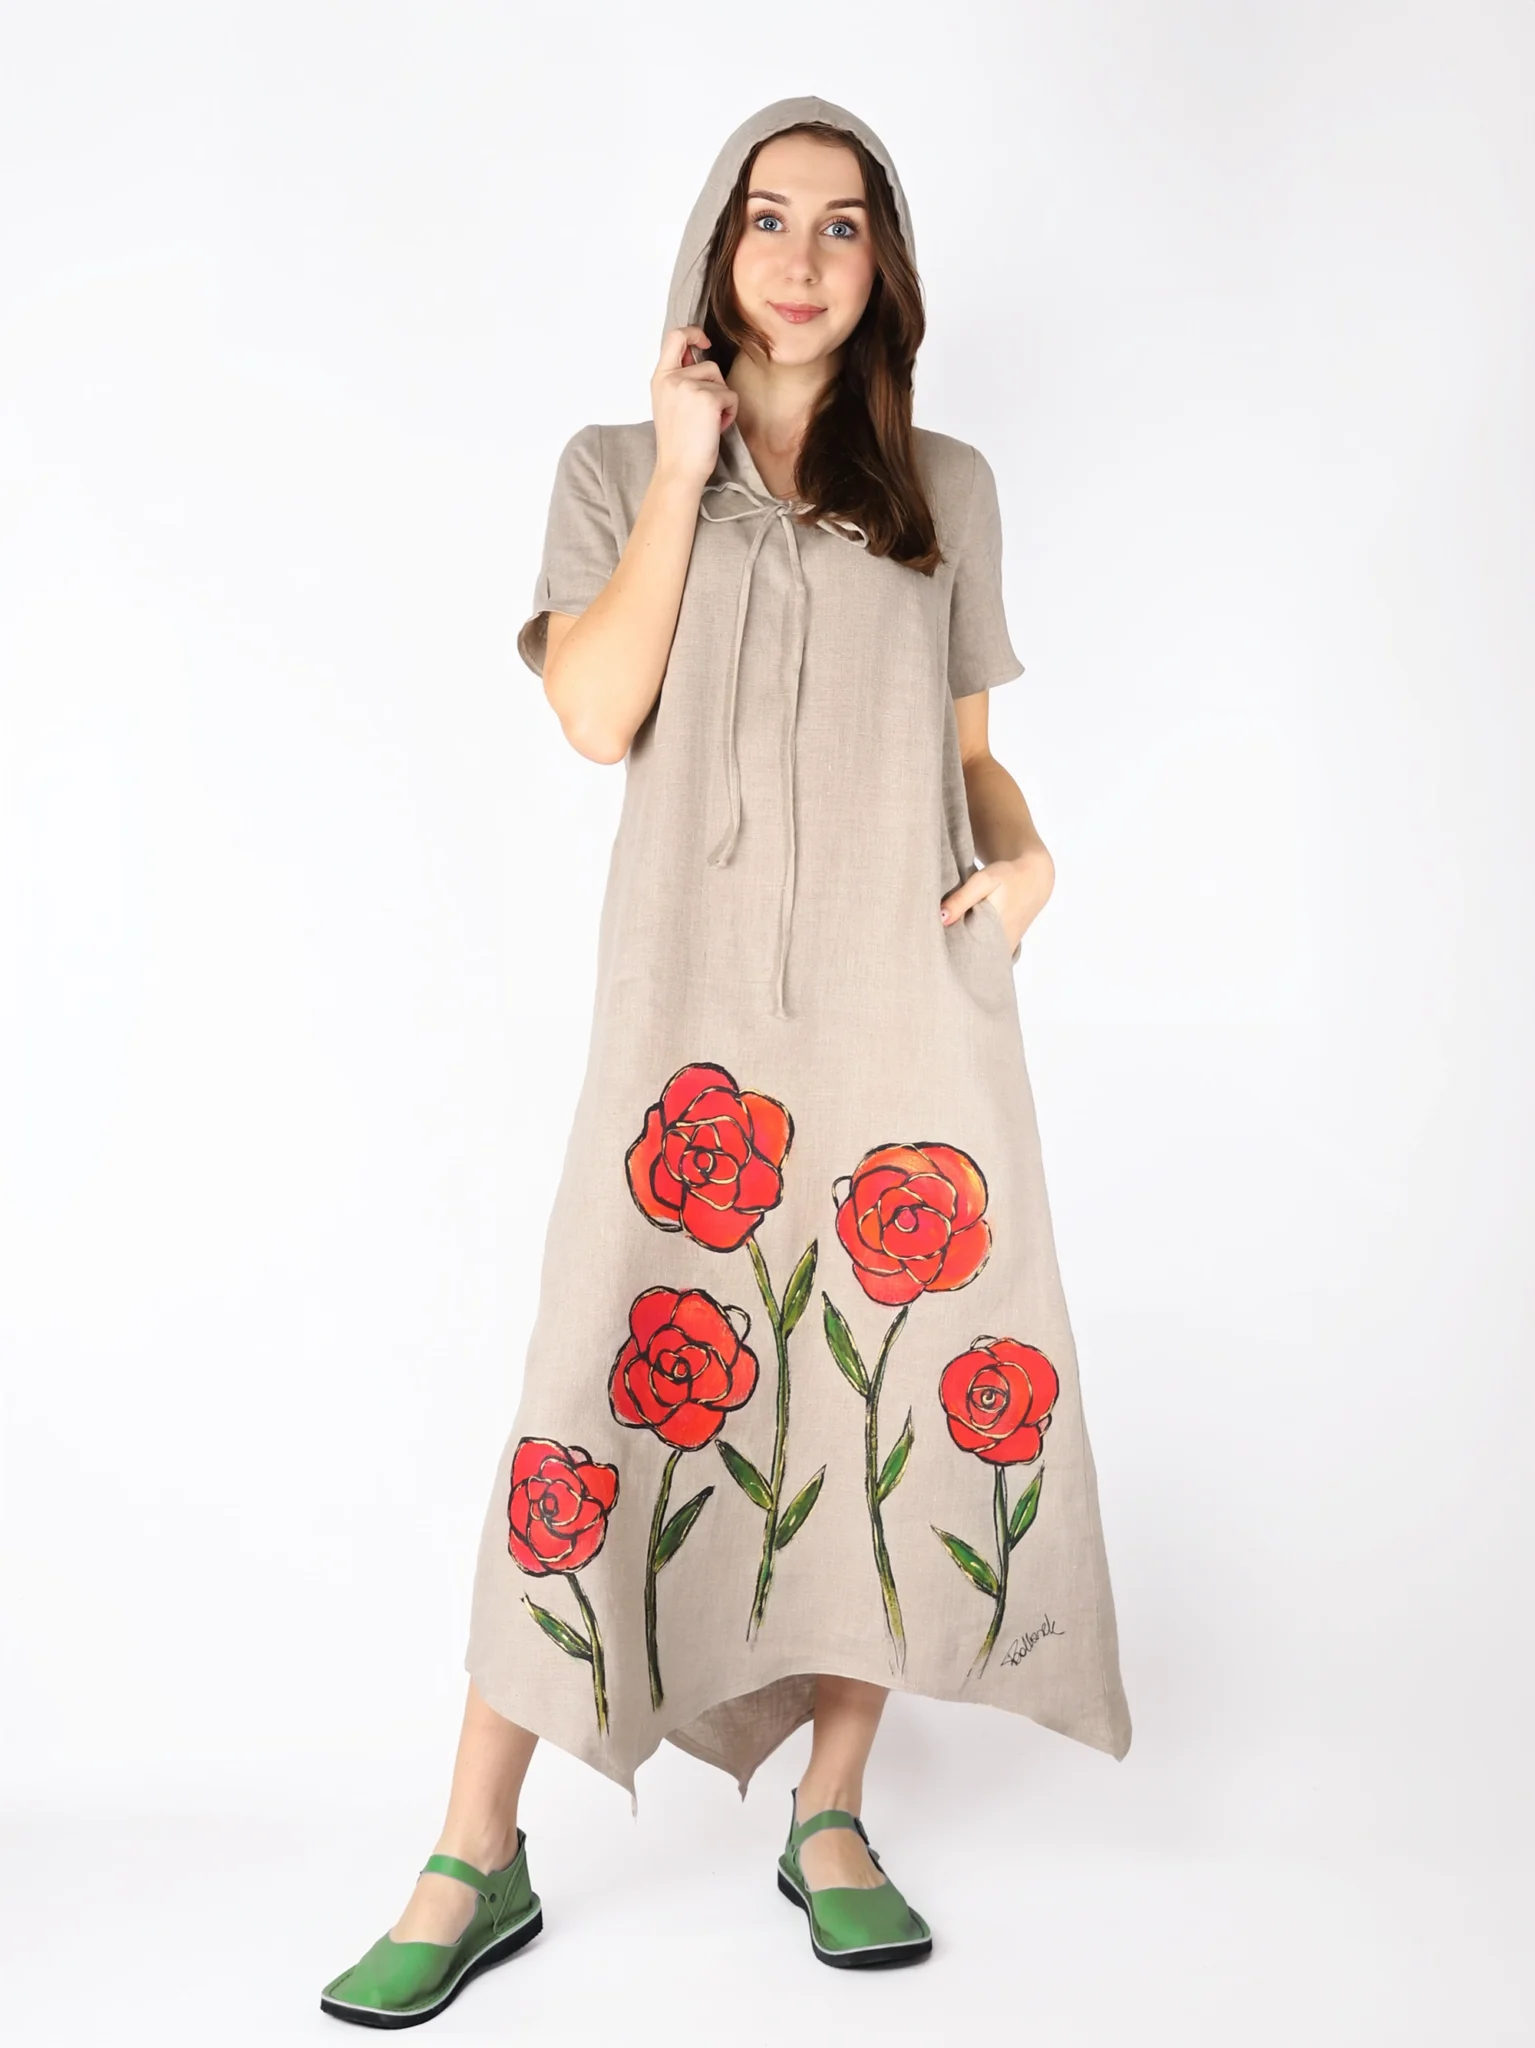 Lniana sukienka z kapturem i asymetrycznym spodem, w kolorze naturalnego lnu, malowana ręcznie w kwiaty.